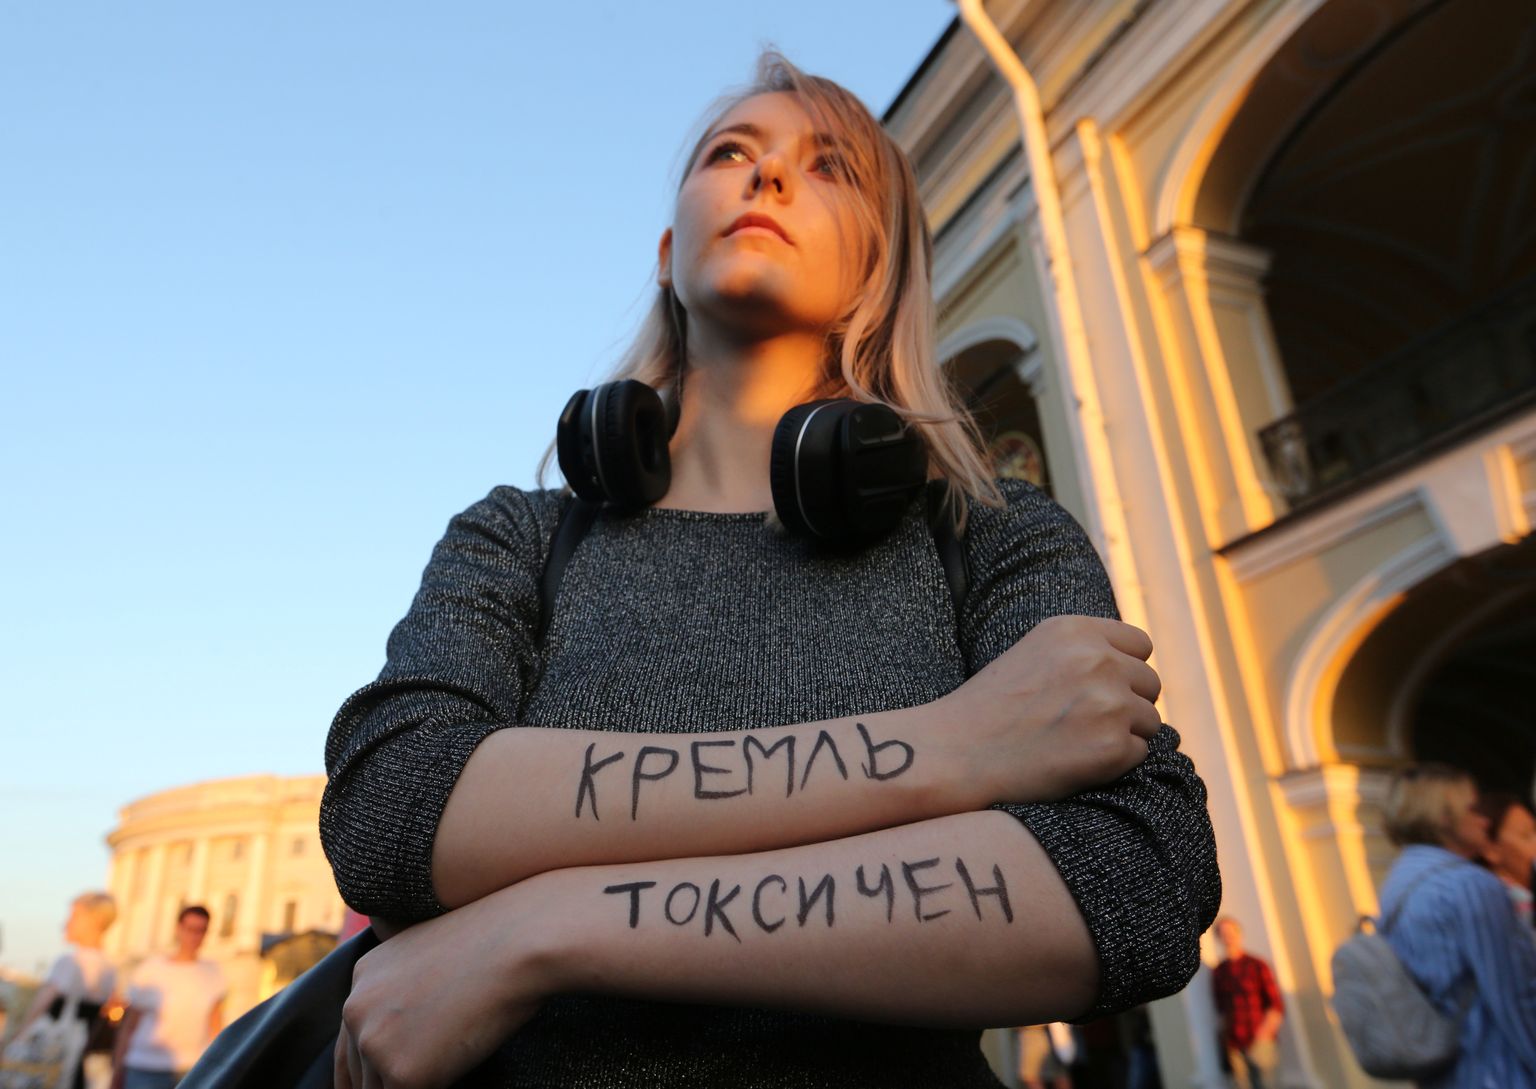 Peterburis neljapäeval korraldatud meeleavaldusel Vene opositsioonipoliitiku Aleksei Navalnõi mürgitamise vastu osalenud naise kätel on sõnum "Kreml on toksiline".